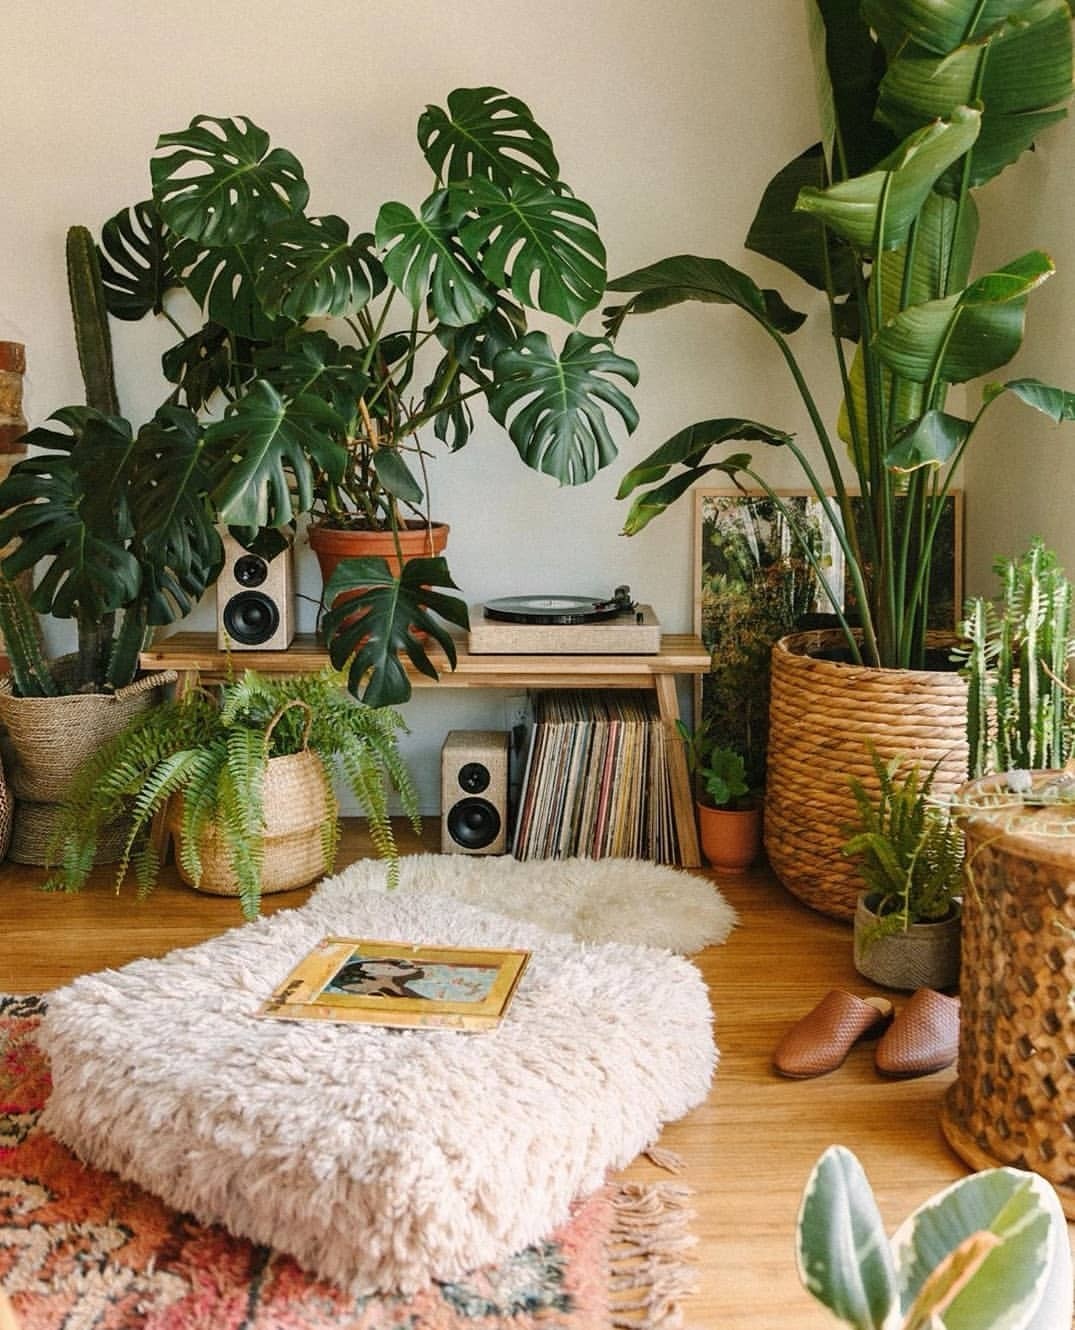 Jardim pequeno: ideias para ter plantas em casas ou apartamentos (Foto: Reprodução/Instagram/@saratoufali)